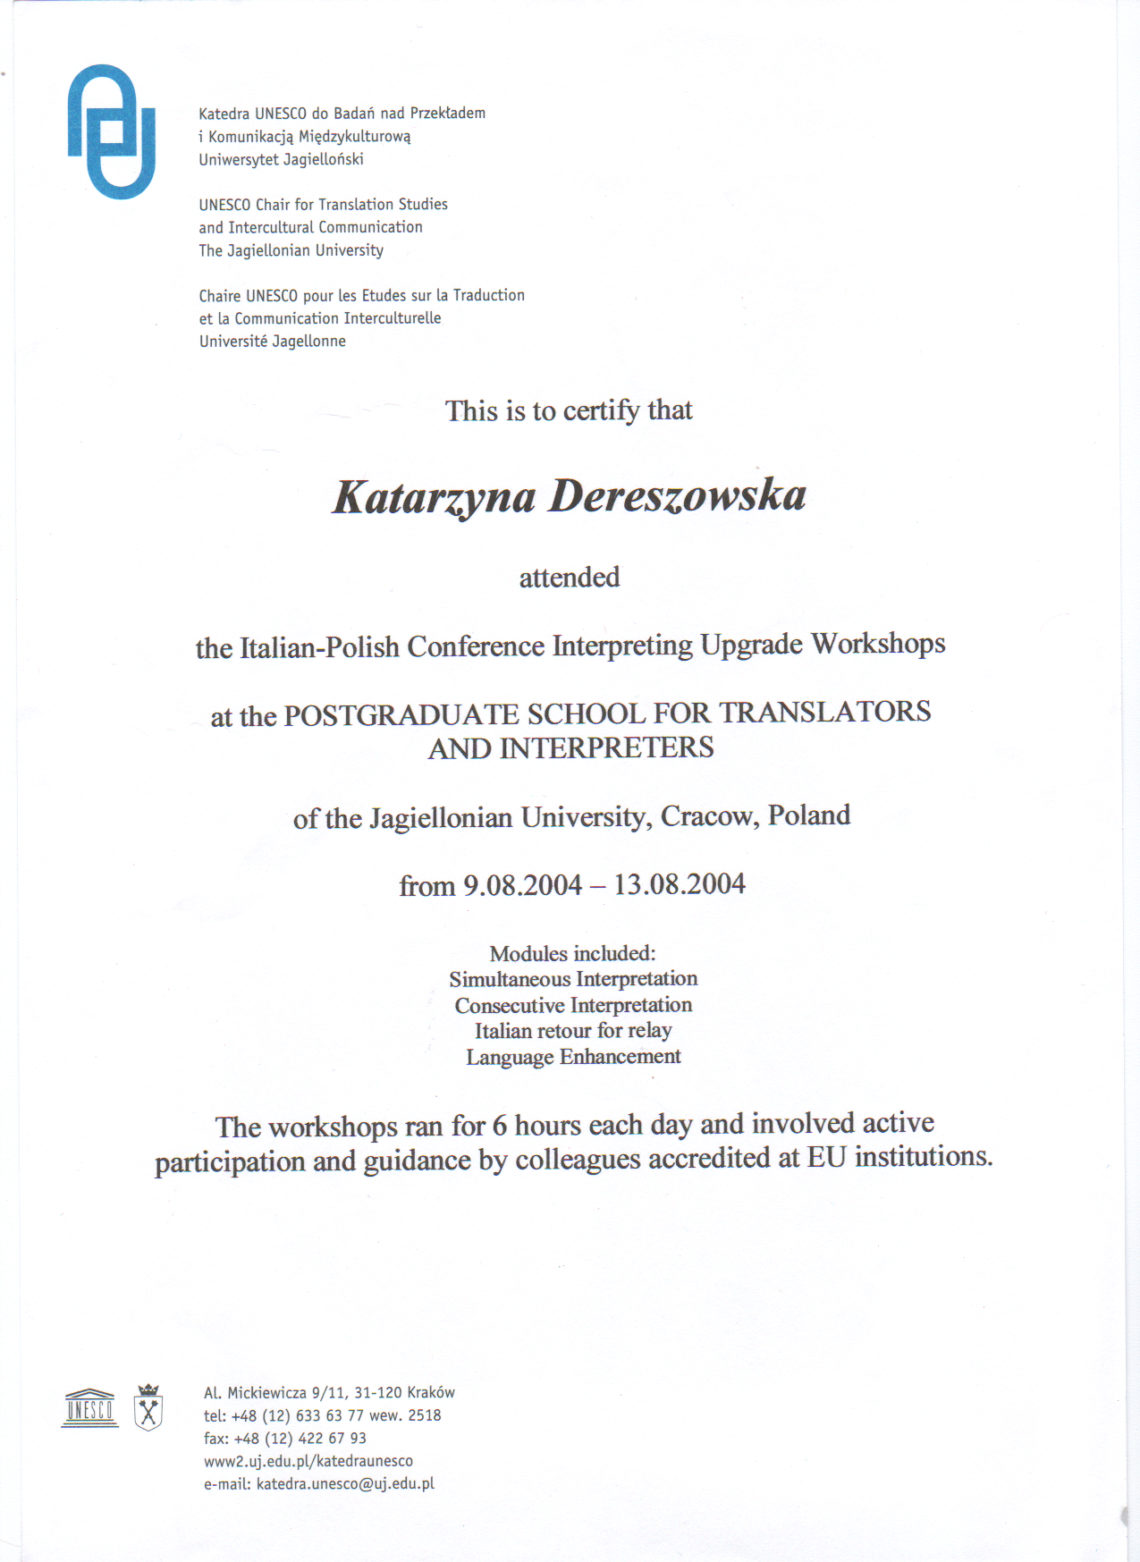 Certyfikat ukończenia warsztatów dla tłumaczy konferencyjnych w podyplomowej szkole dla tłumaczy Uniwersytetu Jagiellońskiego, katedra UNESCO, 2004